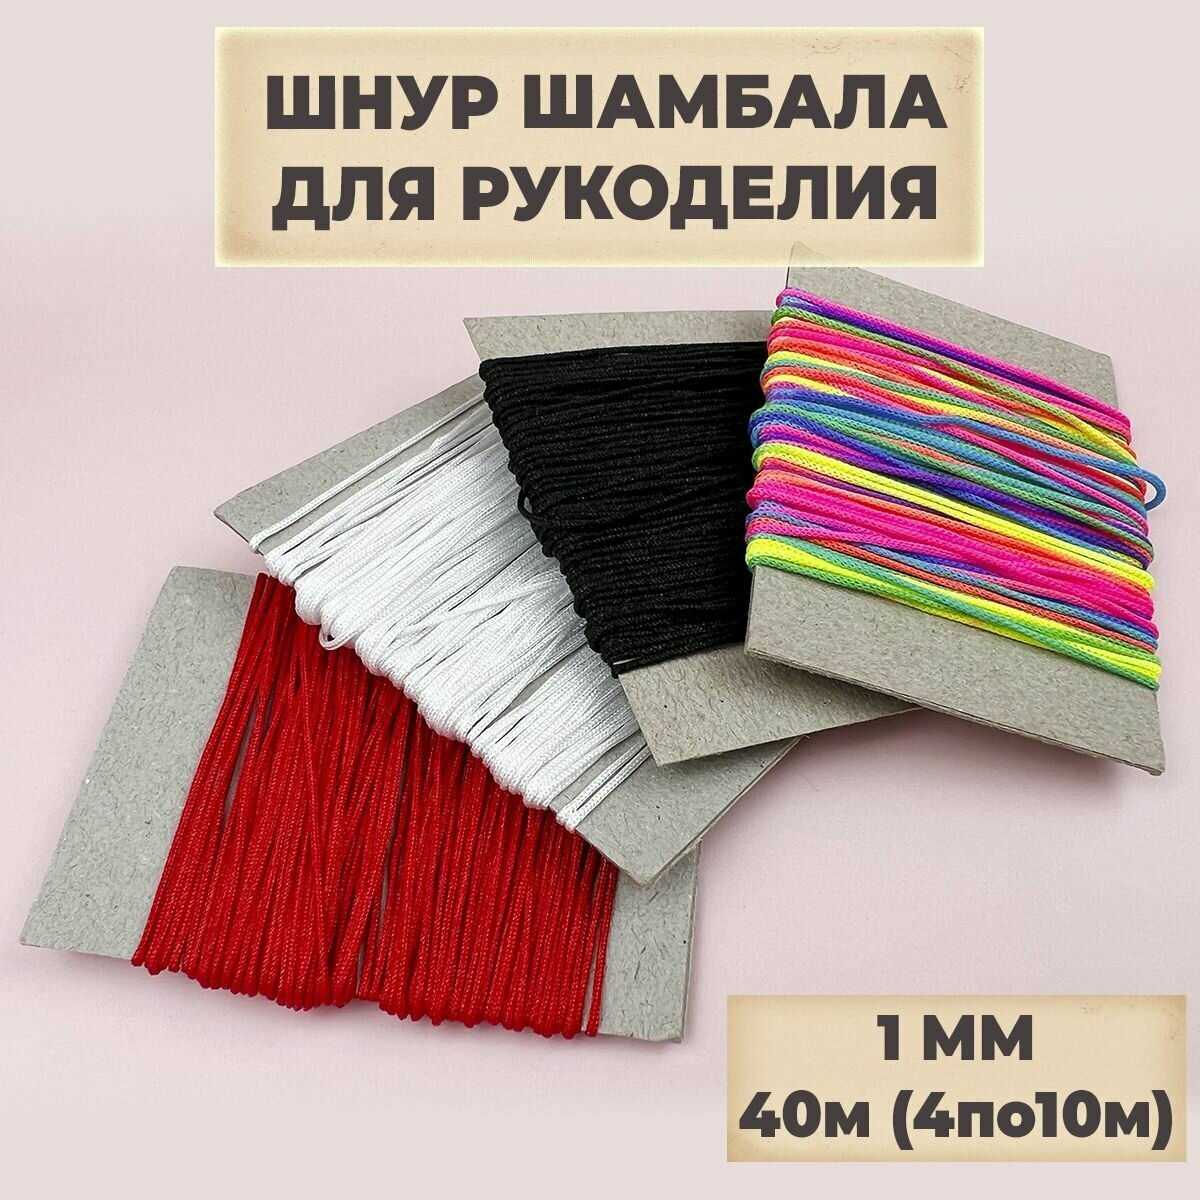 Нить для рукоделия шнур для плетения браслетов шамбала нейлоновая 40м (4 цвета по 10м) 1мм